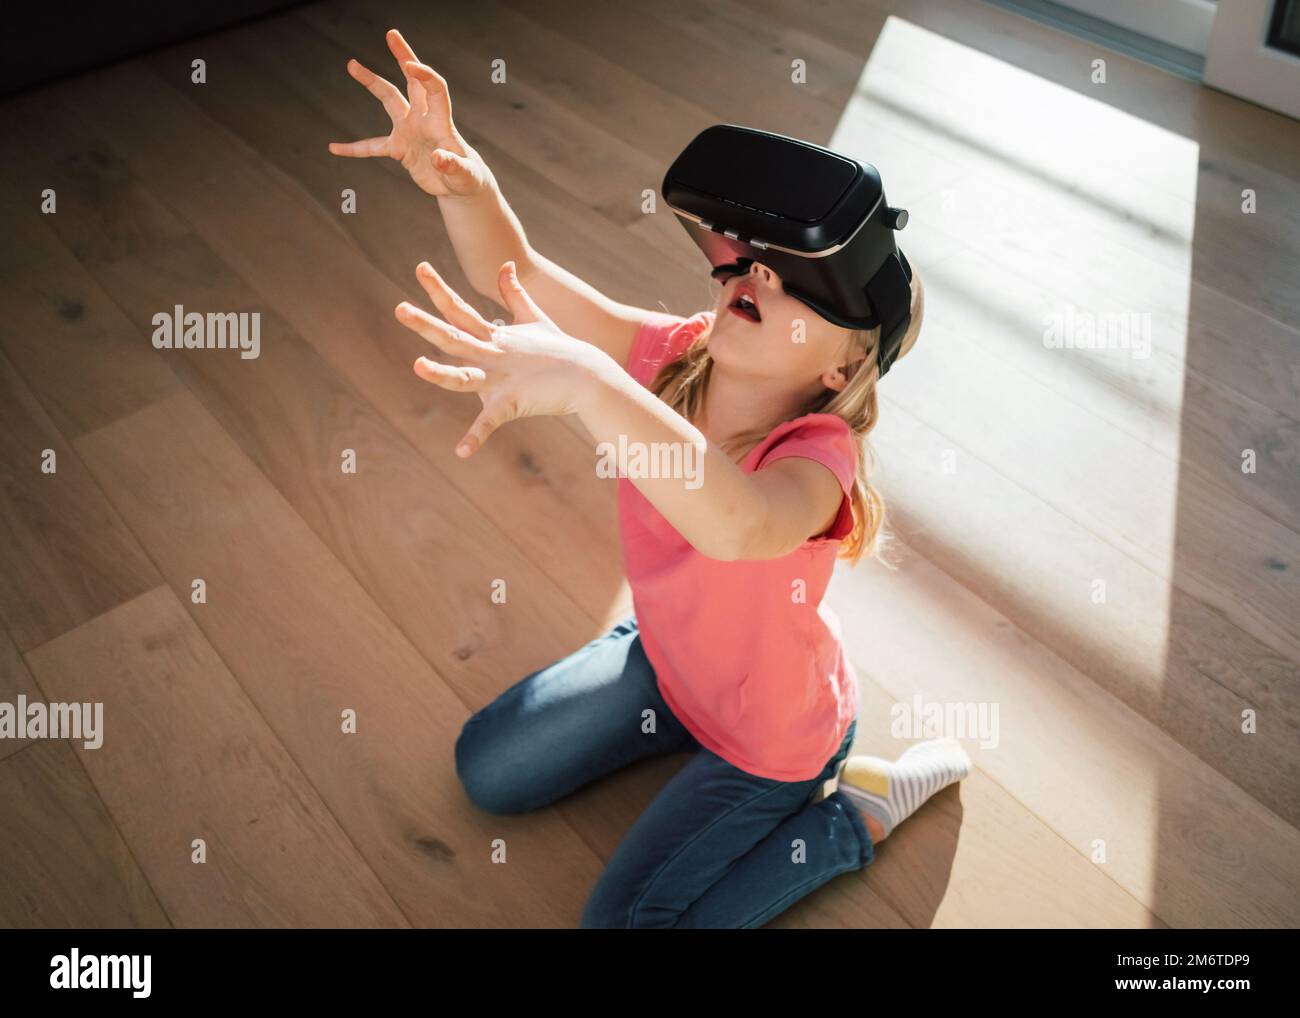 Kaukasische Frau in einem Virtual-Reality-Headset, die auf dem Boden des Wohnzimmers sitzt und sich auf die virtuelle Welt freut Stockfoto